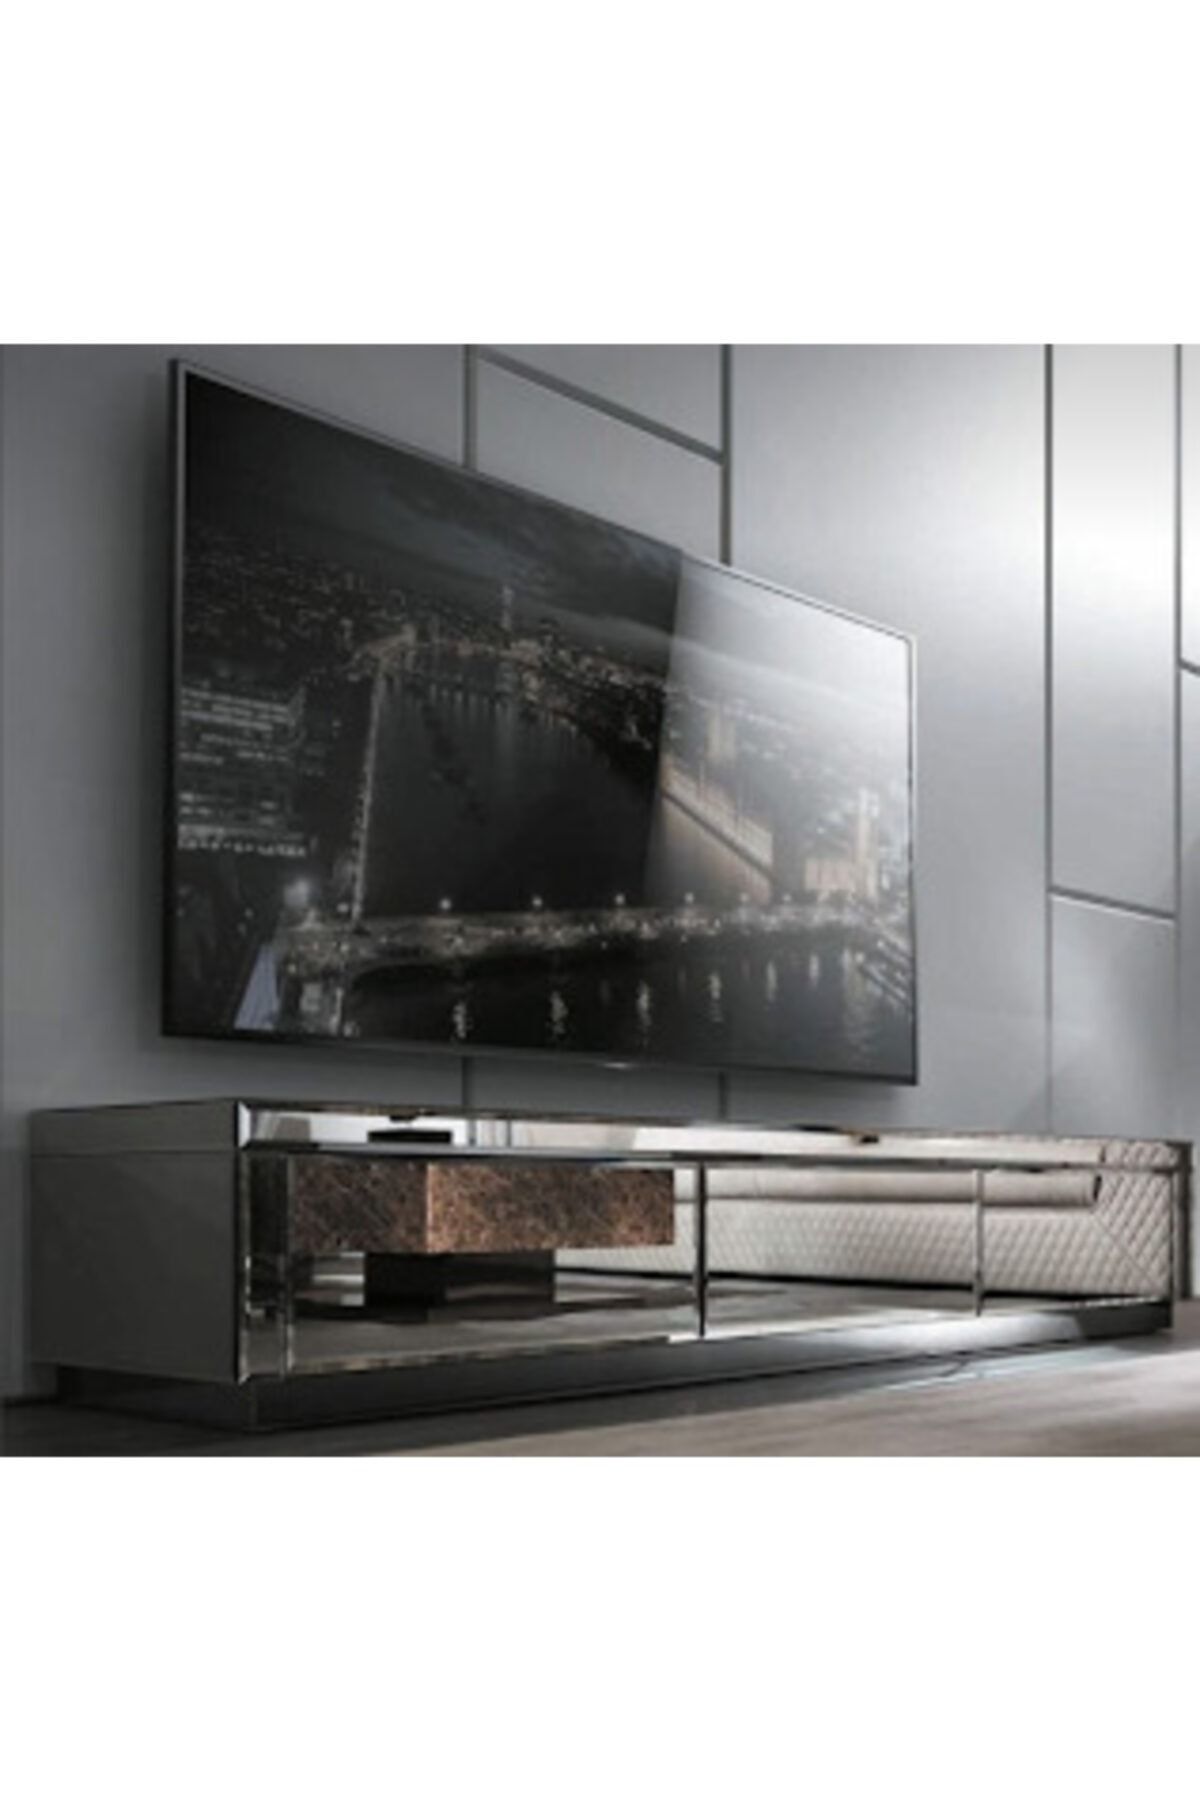 LUXURY VİLLA Luxury Füme Aynalı 3 Çekmeceli Tv Sehpası Uzunluk 192 Cm Derinlik 45 Cm Yükseklik 46 Cm